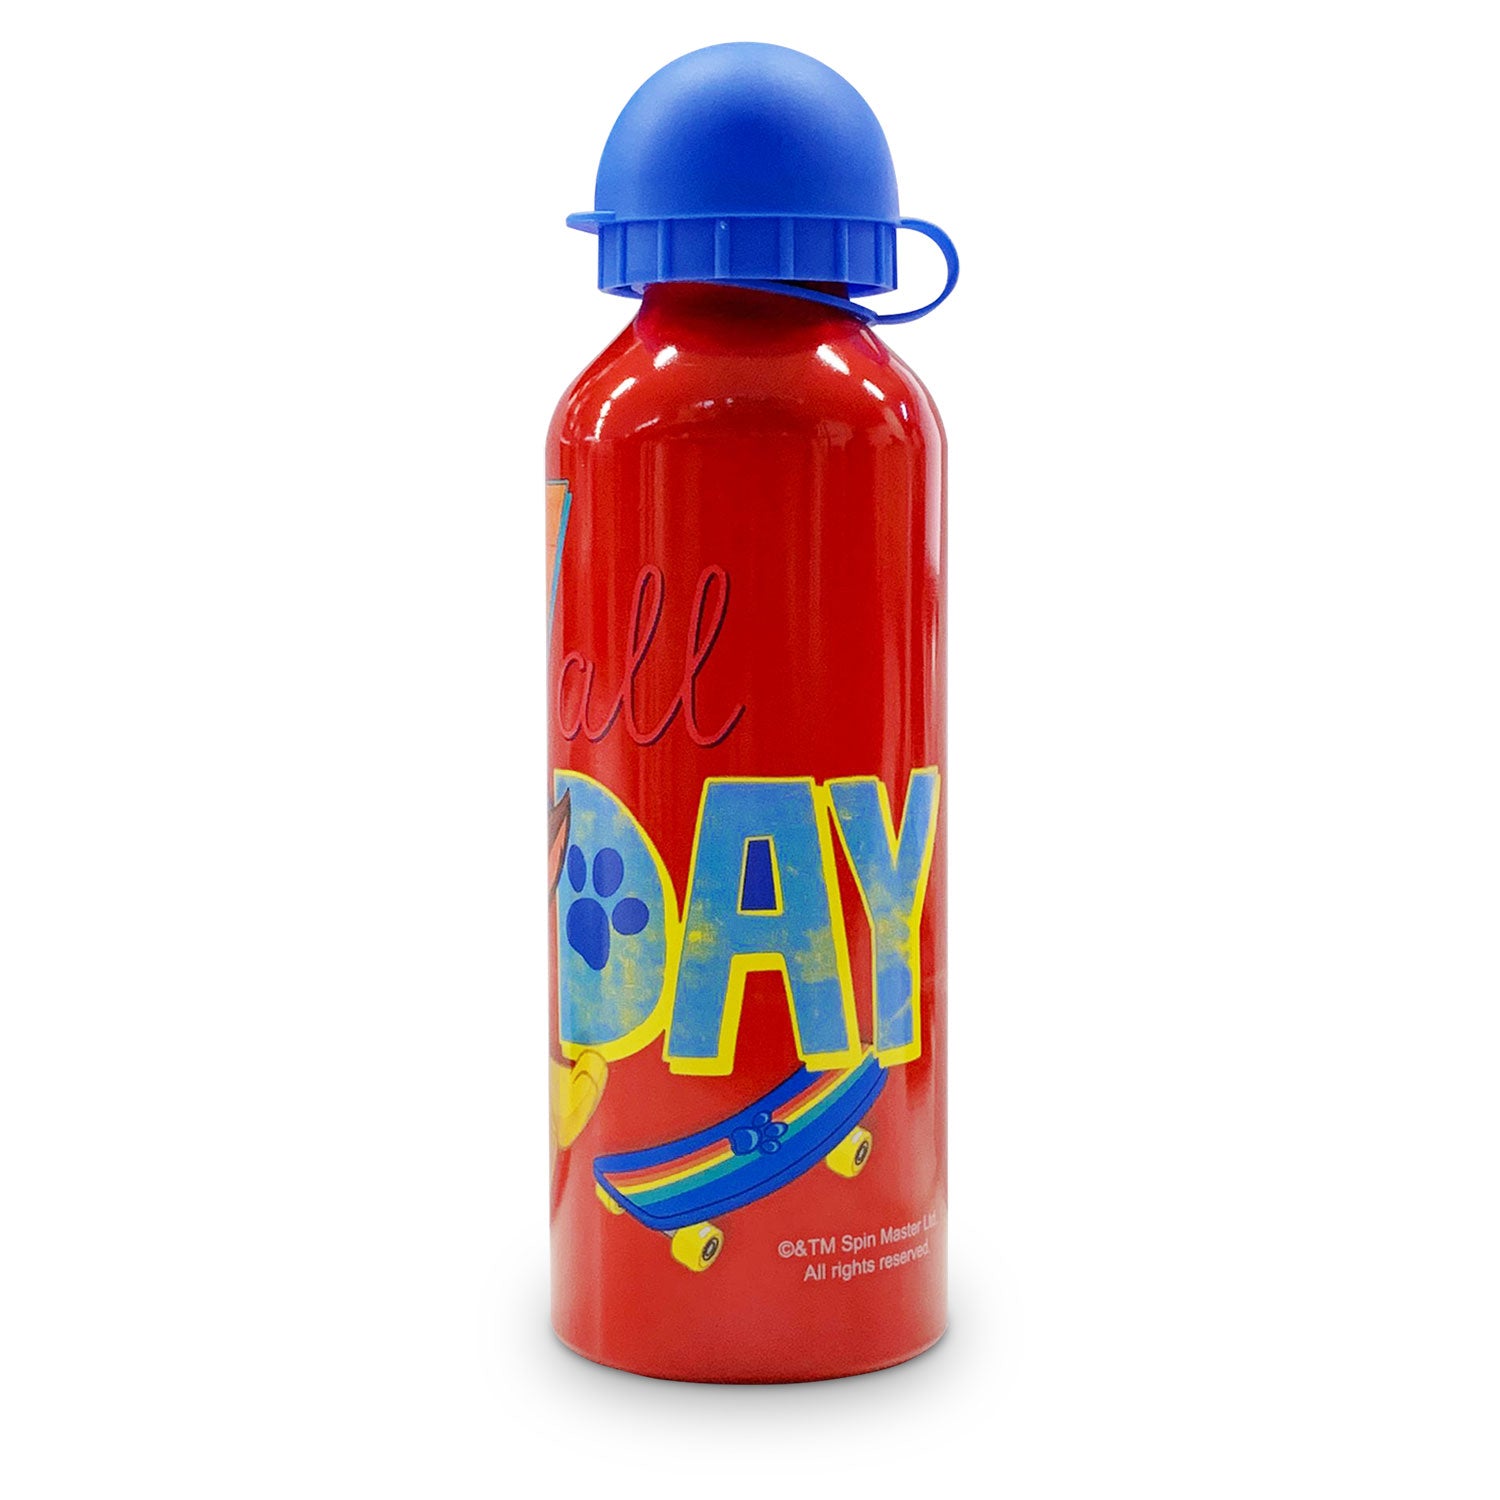 Borraccia bambini Paw Patrol bottiglia in allumino con beccuccio 500ml 4967